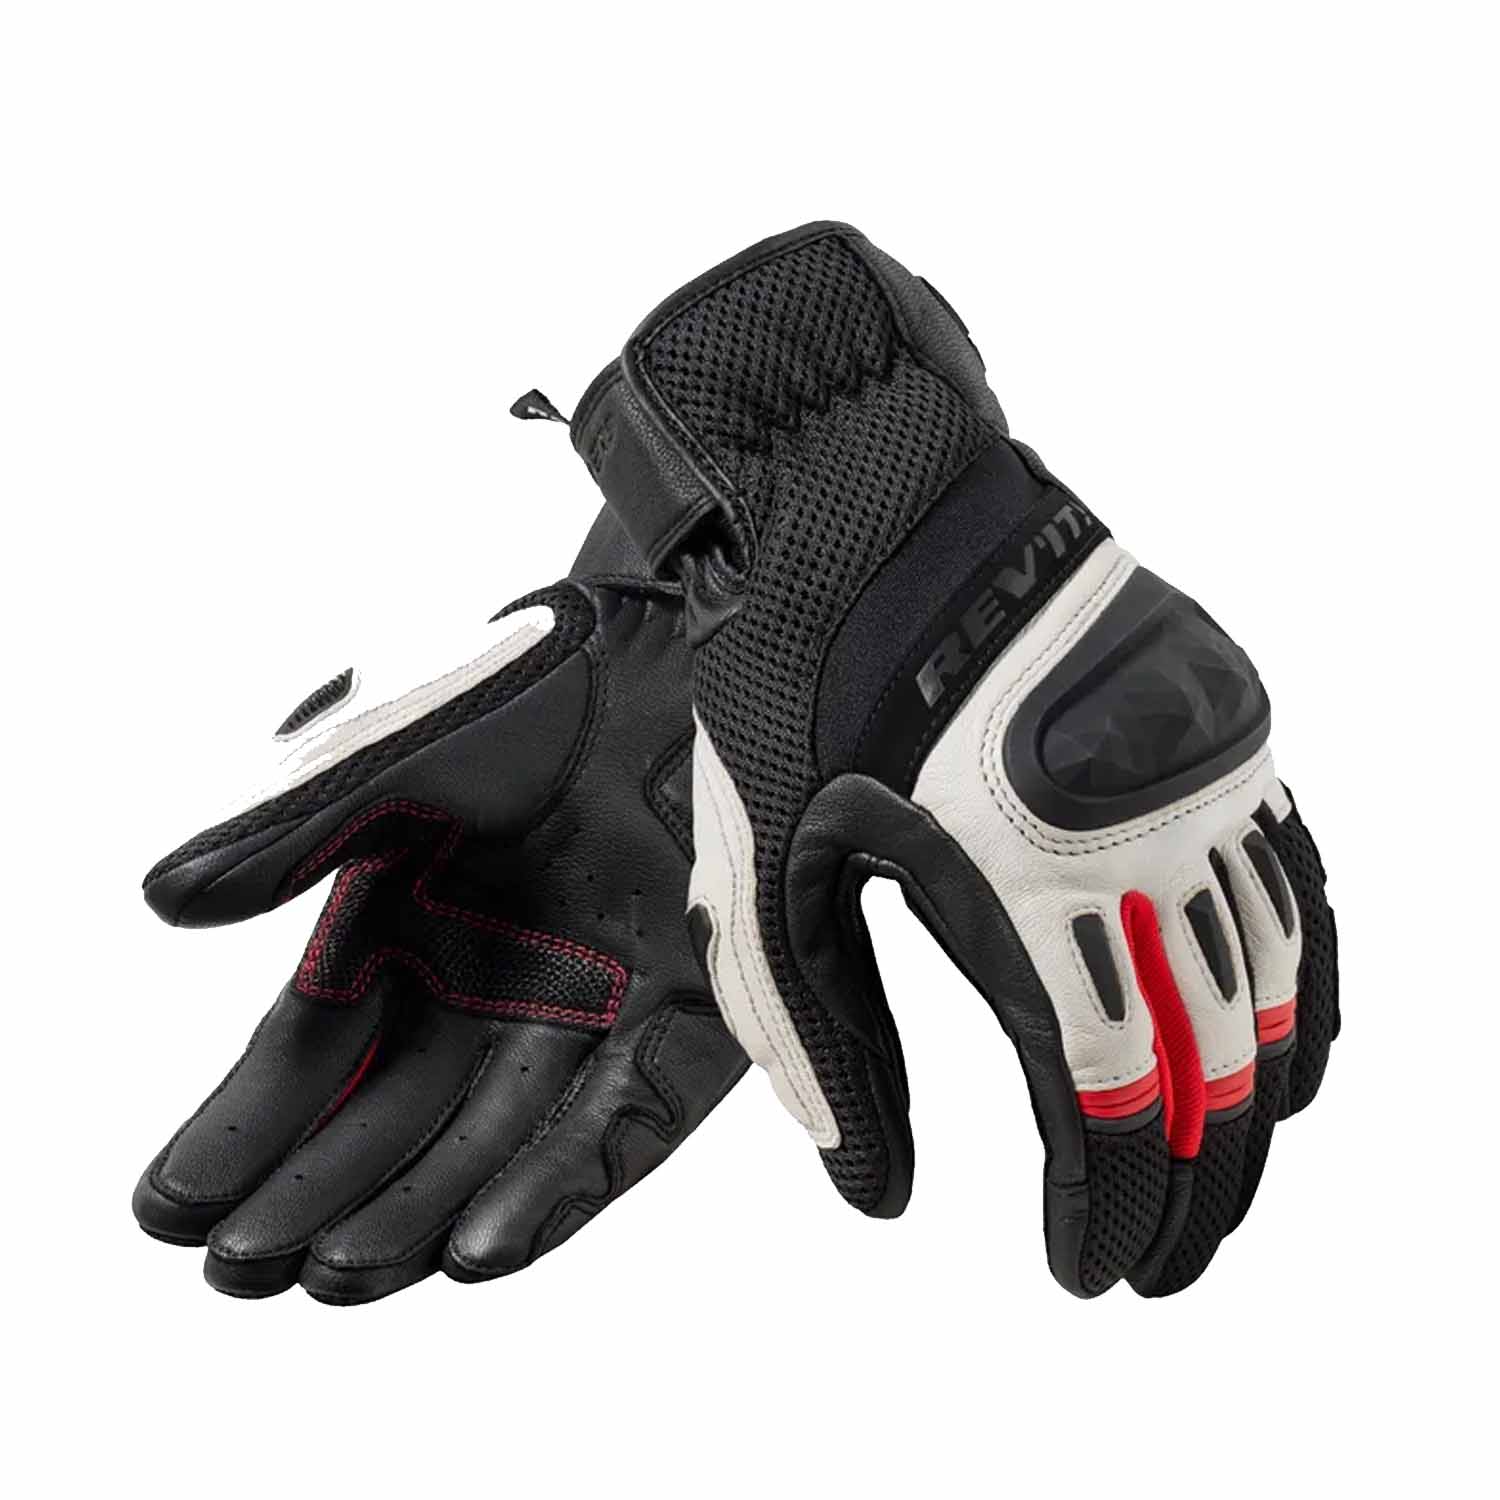 Image of REV'IT! Dirt 4 Gloves Black Red Größe 3XL